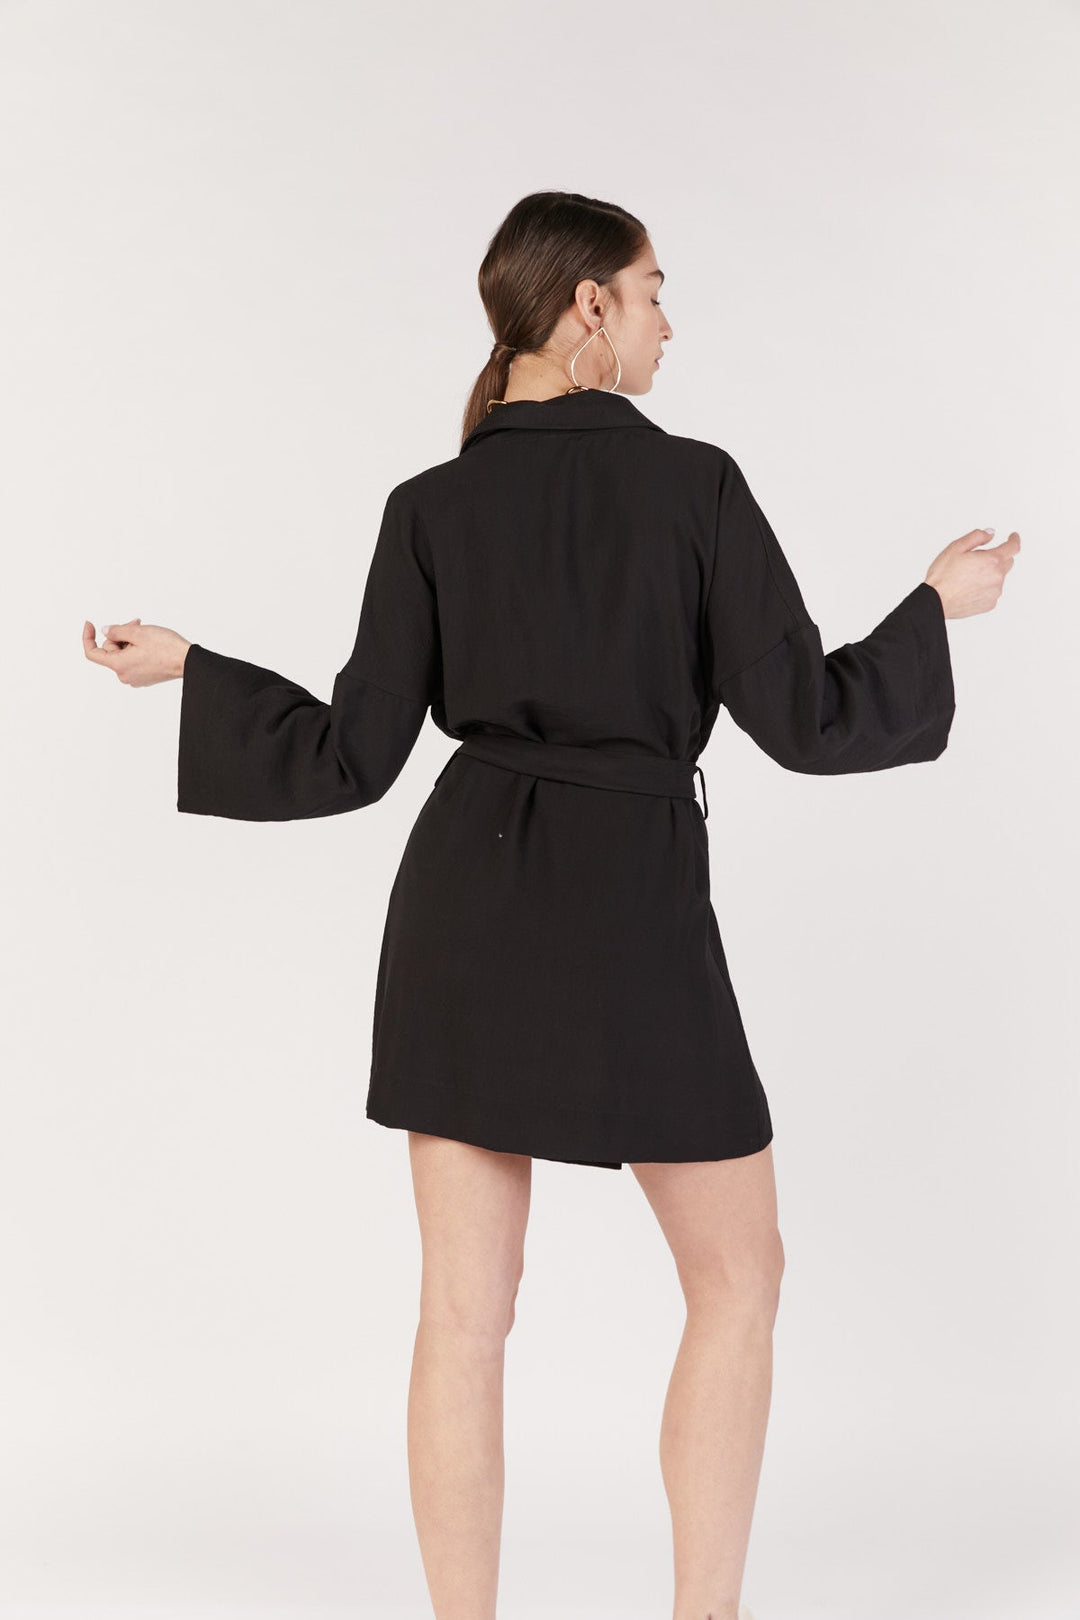 שמלת מיני אפרודיט בצבע שחור - Re